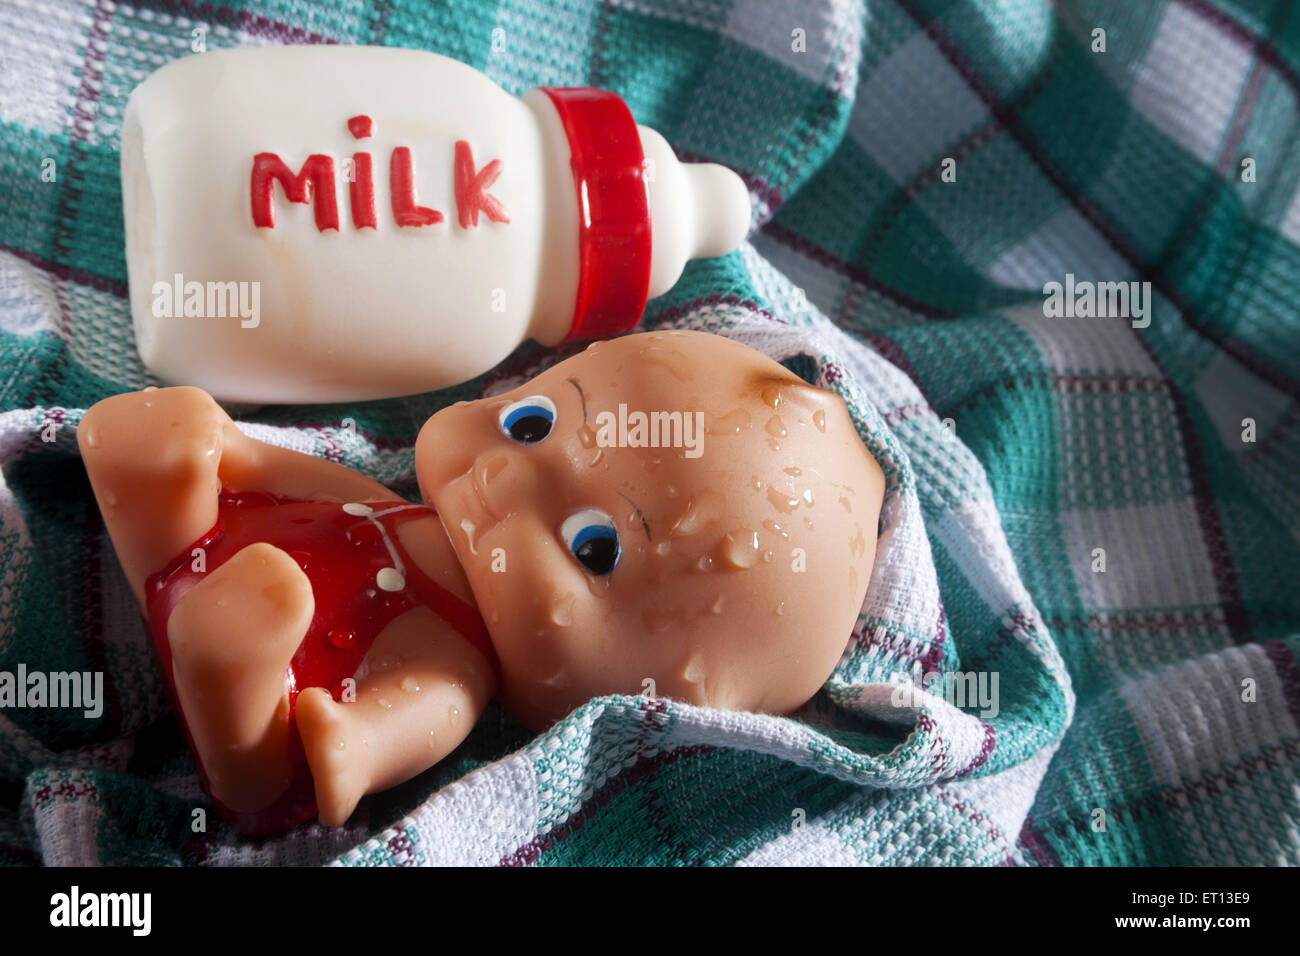 Bébé jouets et bouteille de lait fabriqué à partir de caoutchouc sur le tissu de coton absorbant l'Inde Asie Sept 2011 Banque D'Images